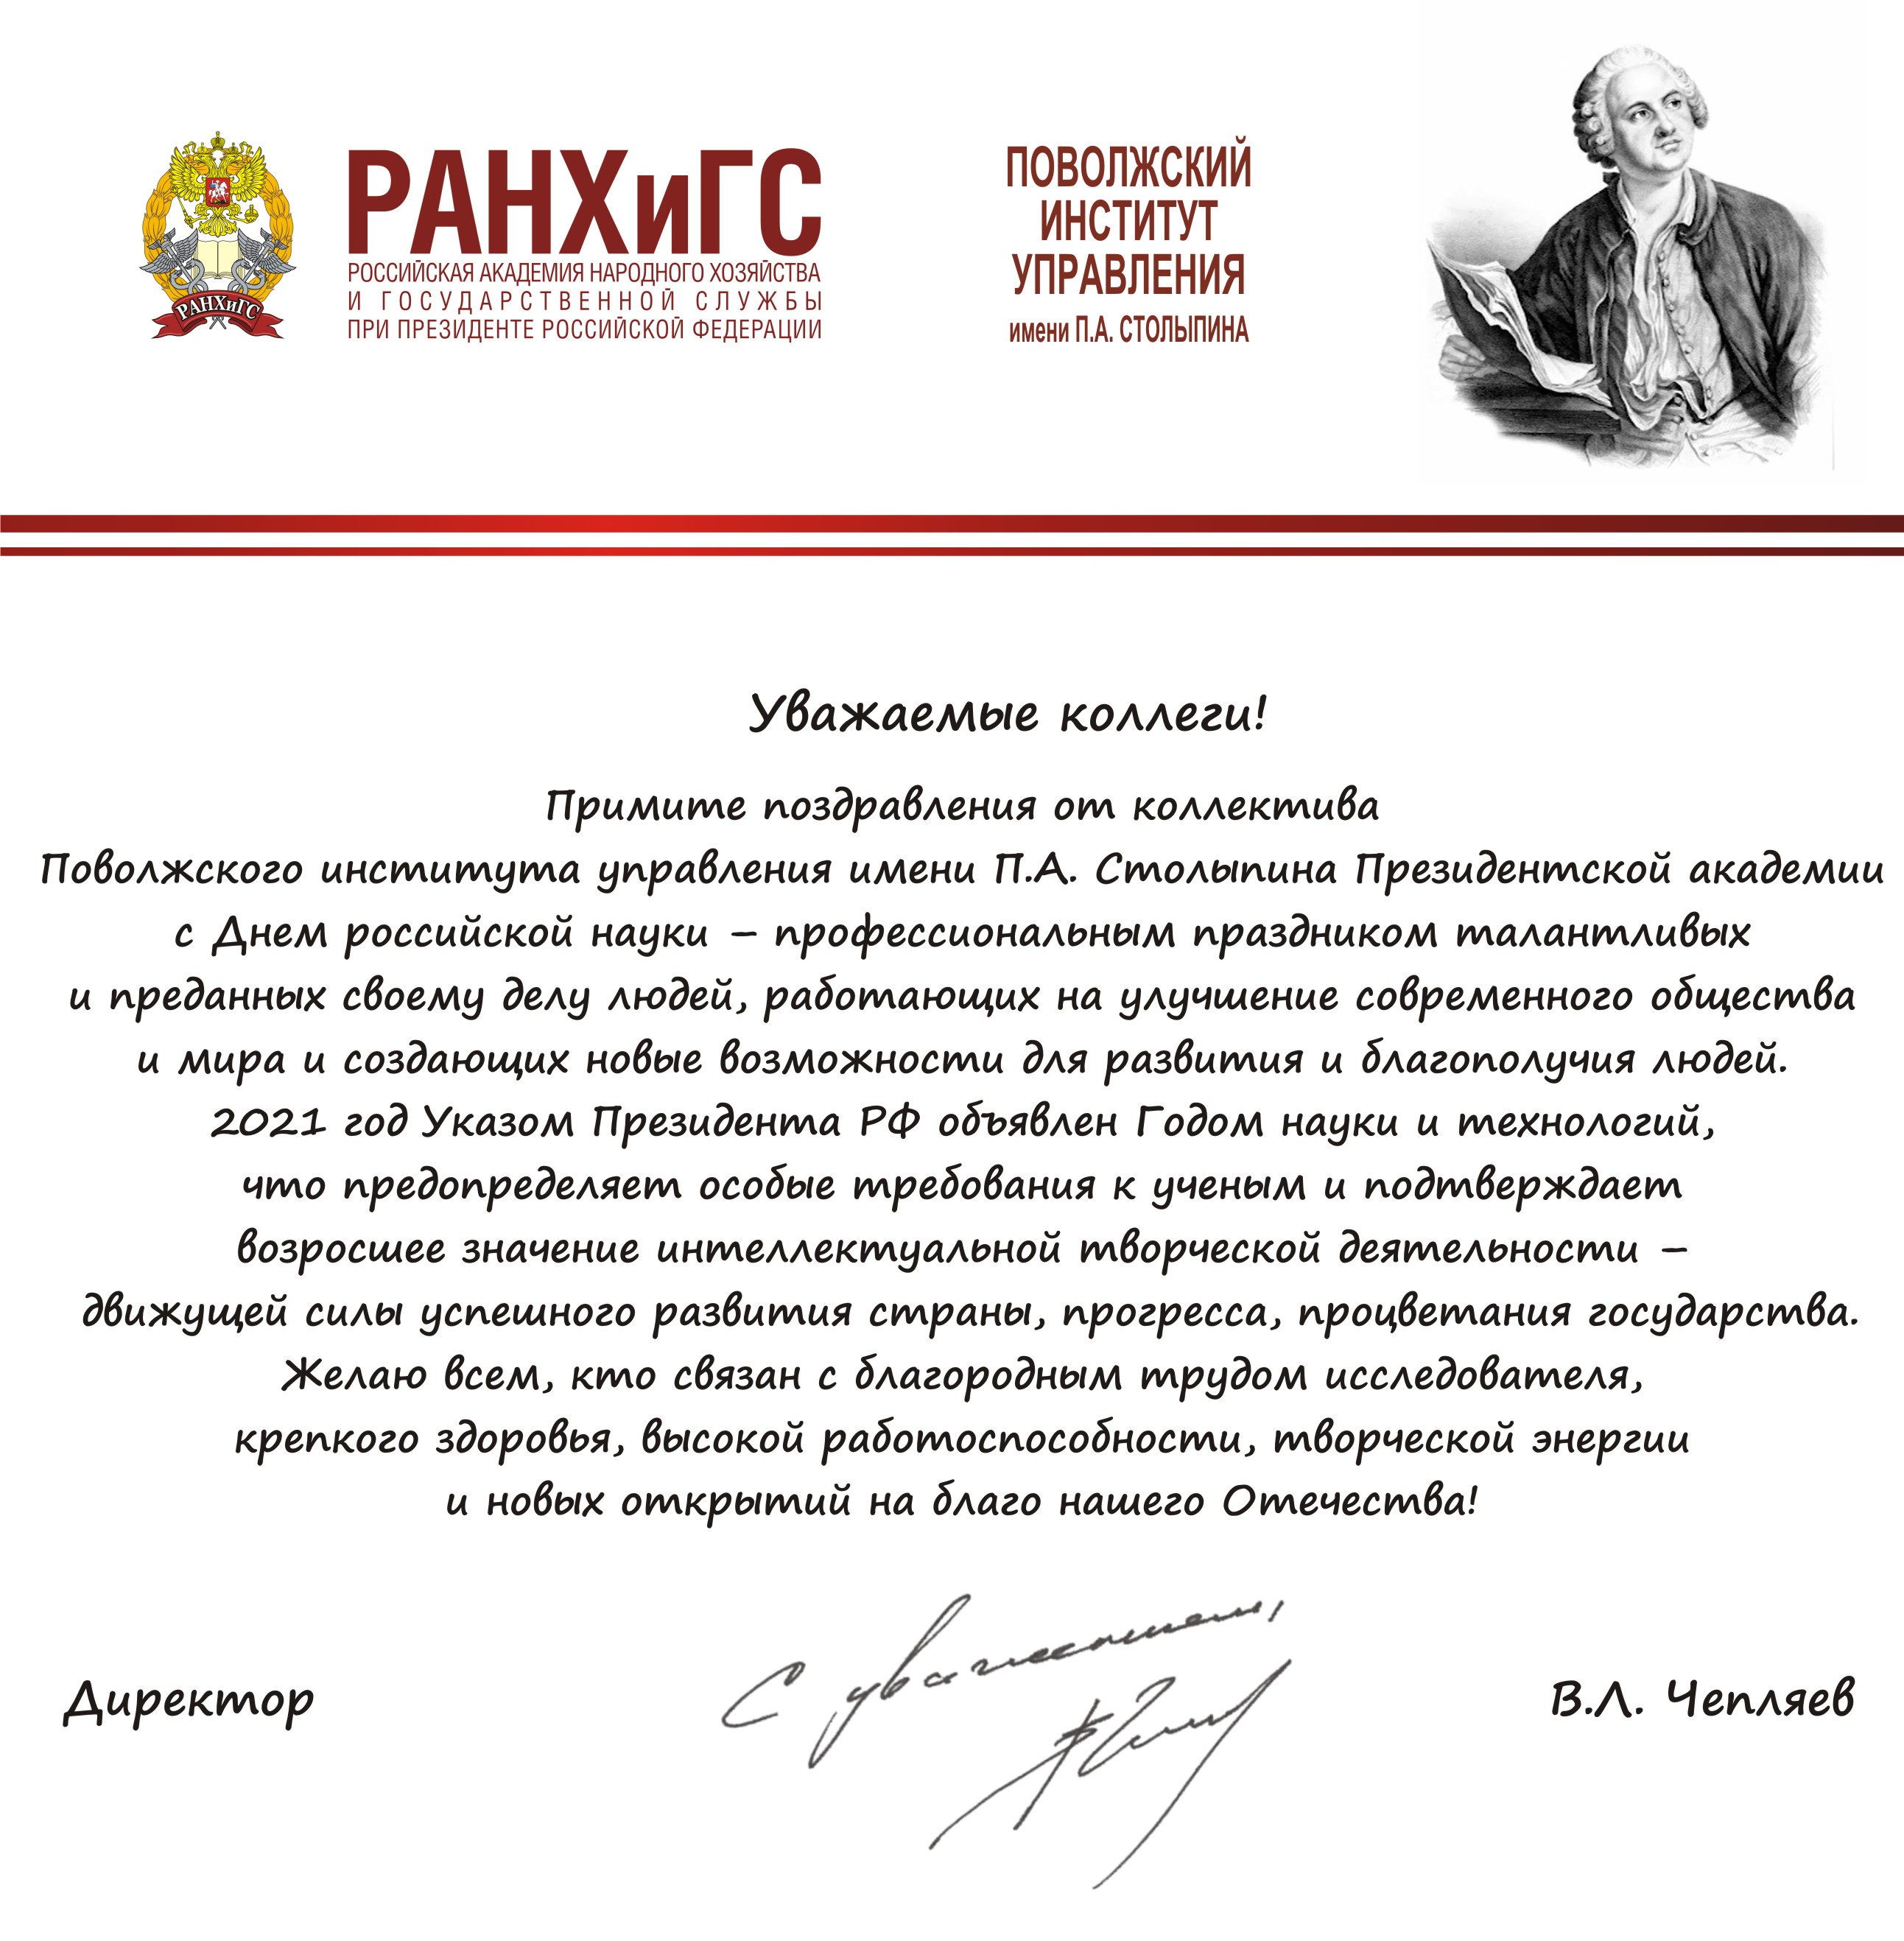 Поздравление с днем Российской науки официальное